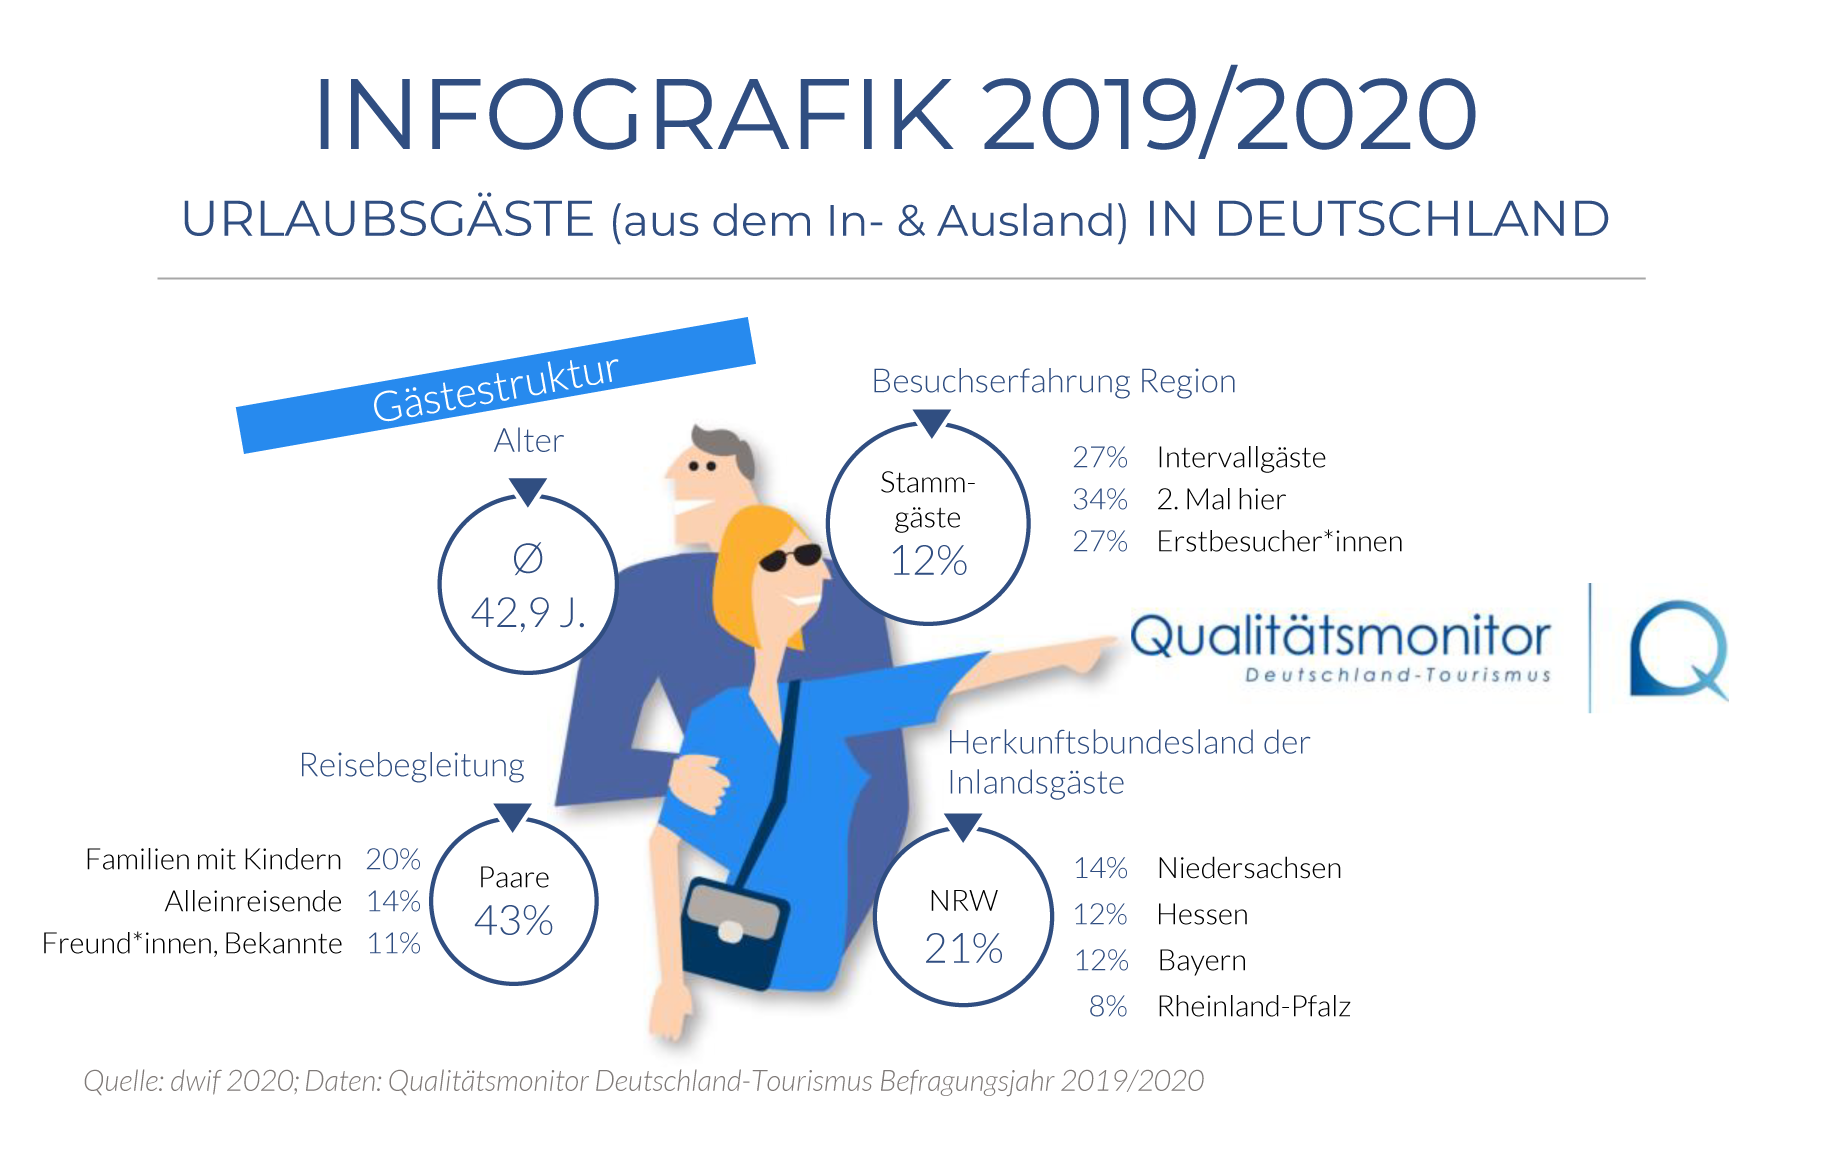 dwif-Infografik Qualitätsmonitor Deutschland-Tourismus 2020